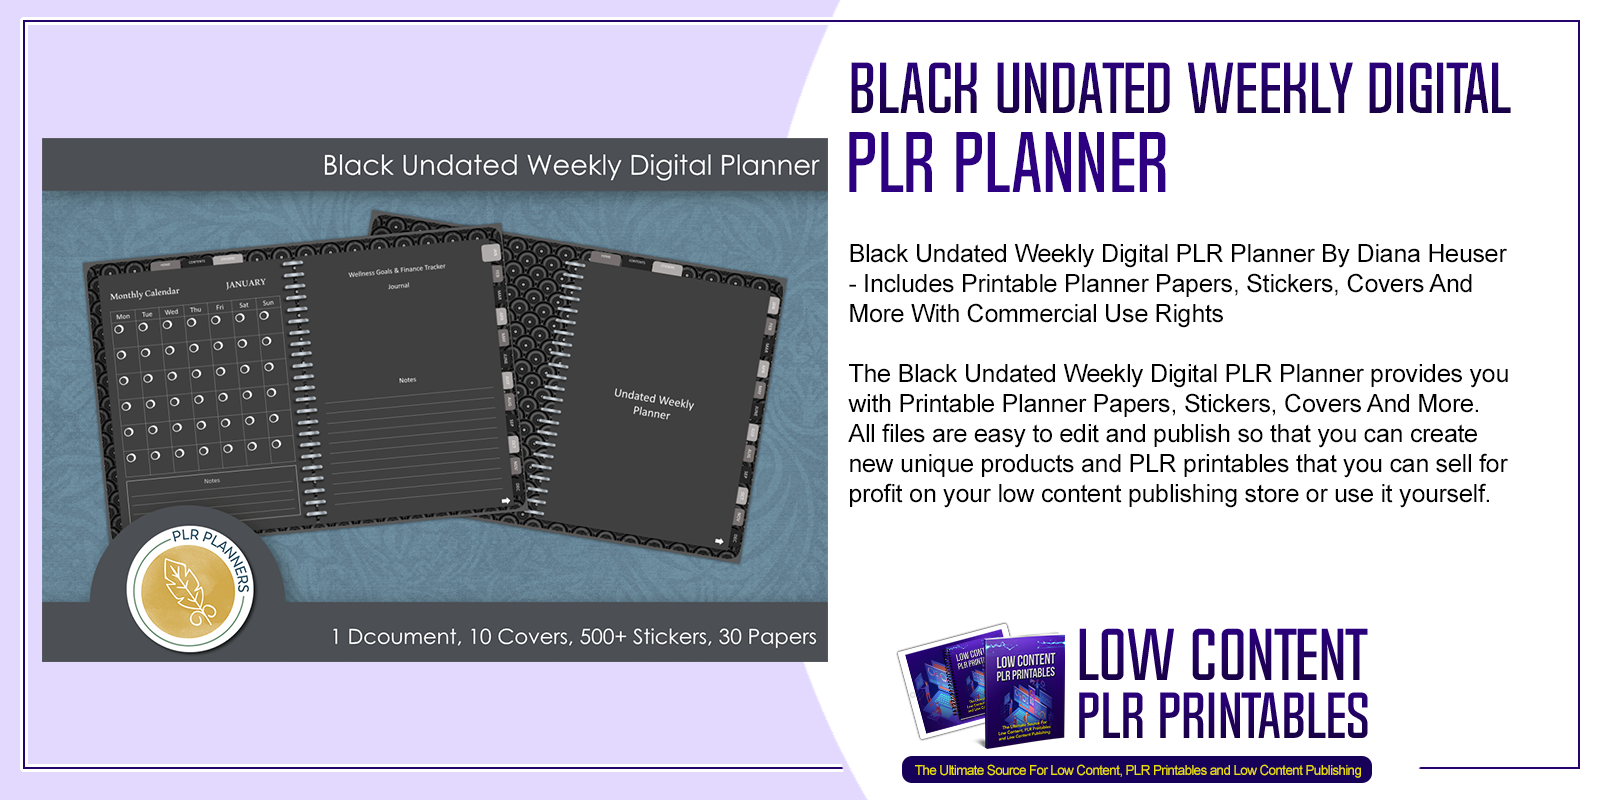 Black Undated Weekly Digital PLR Planner